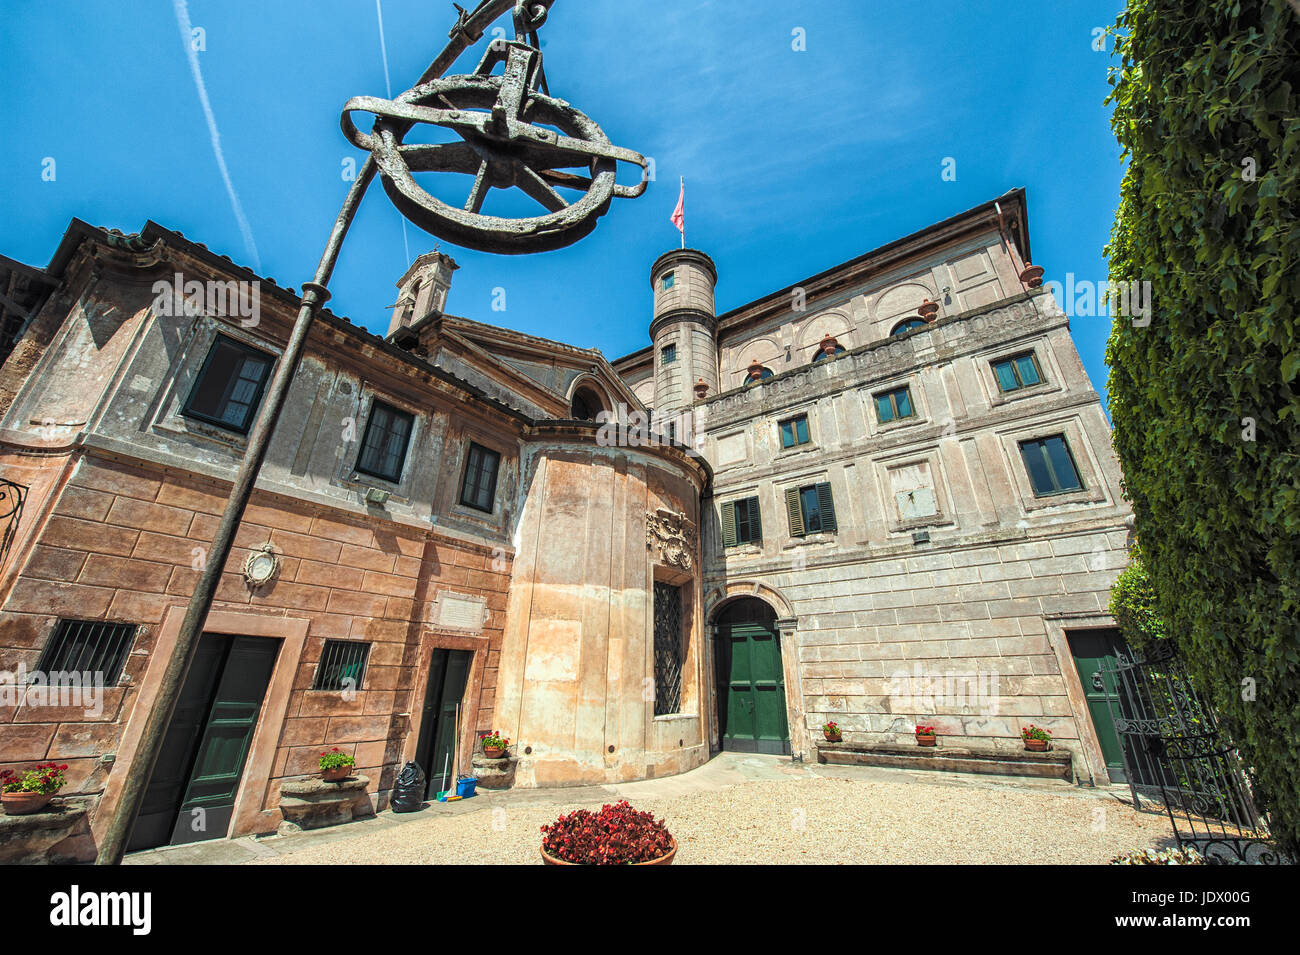 Briefely Gran priorato di Roma: the courtyard behind the Church Santa Maria del Priorato, Rome, Italy Stock Photo